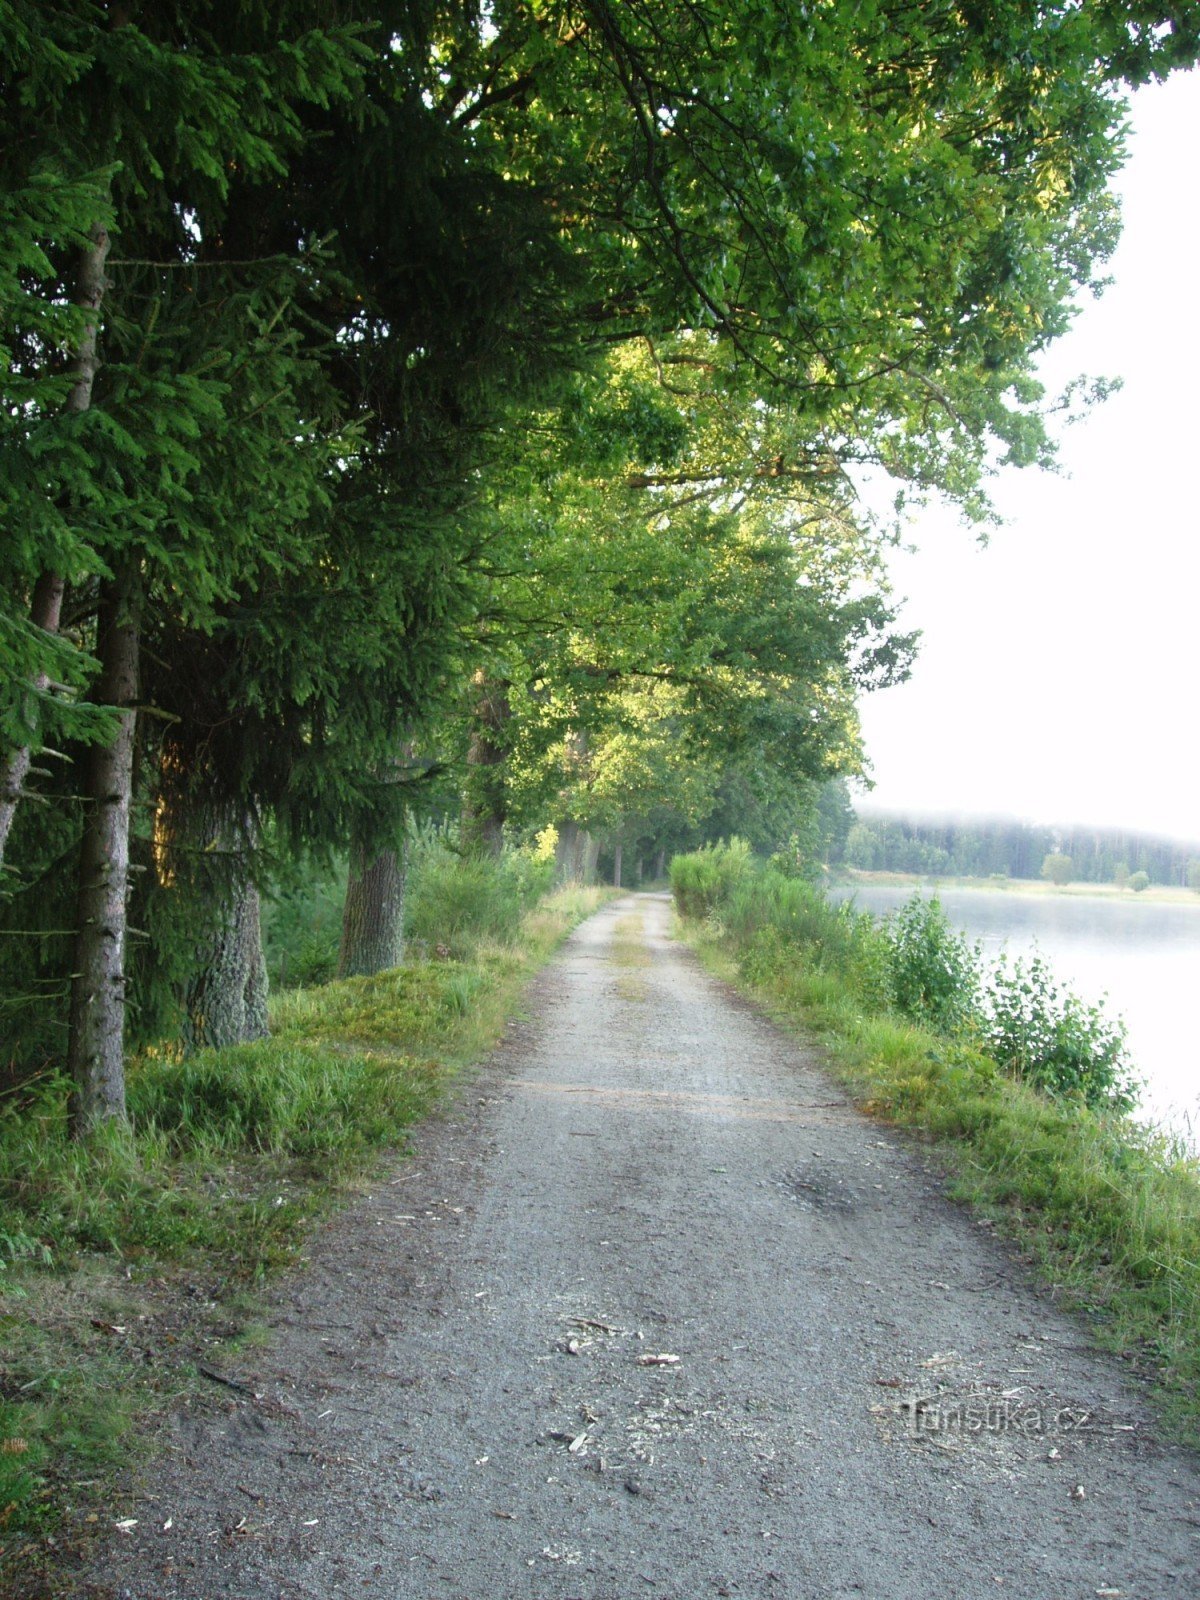 メディニカを結ぶ森林国境道路は、スヴォボドネ・リブニクのダムに沿って走っています